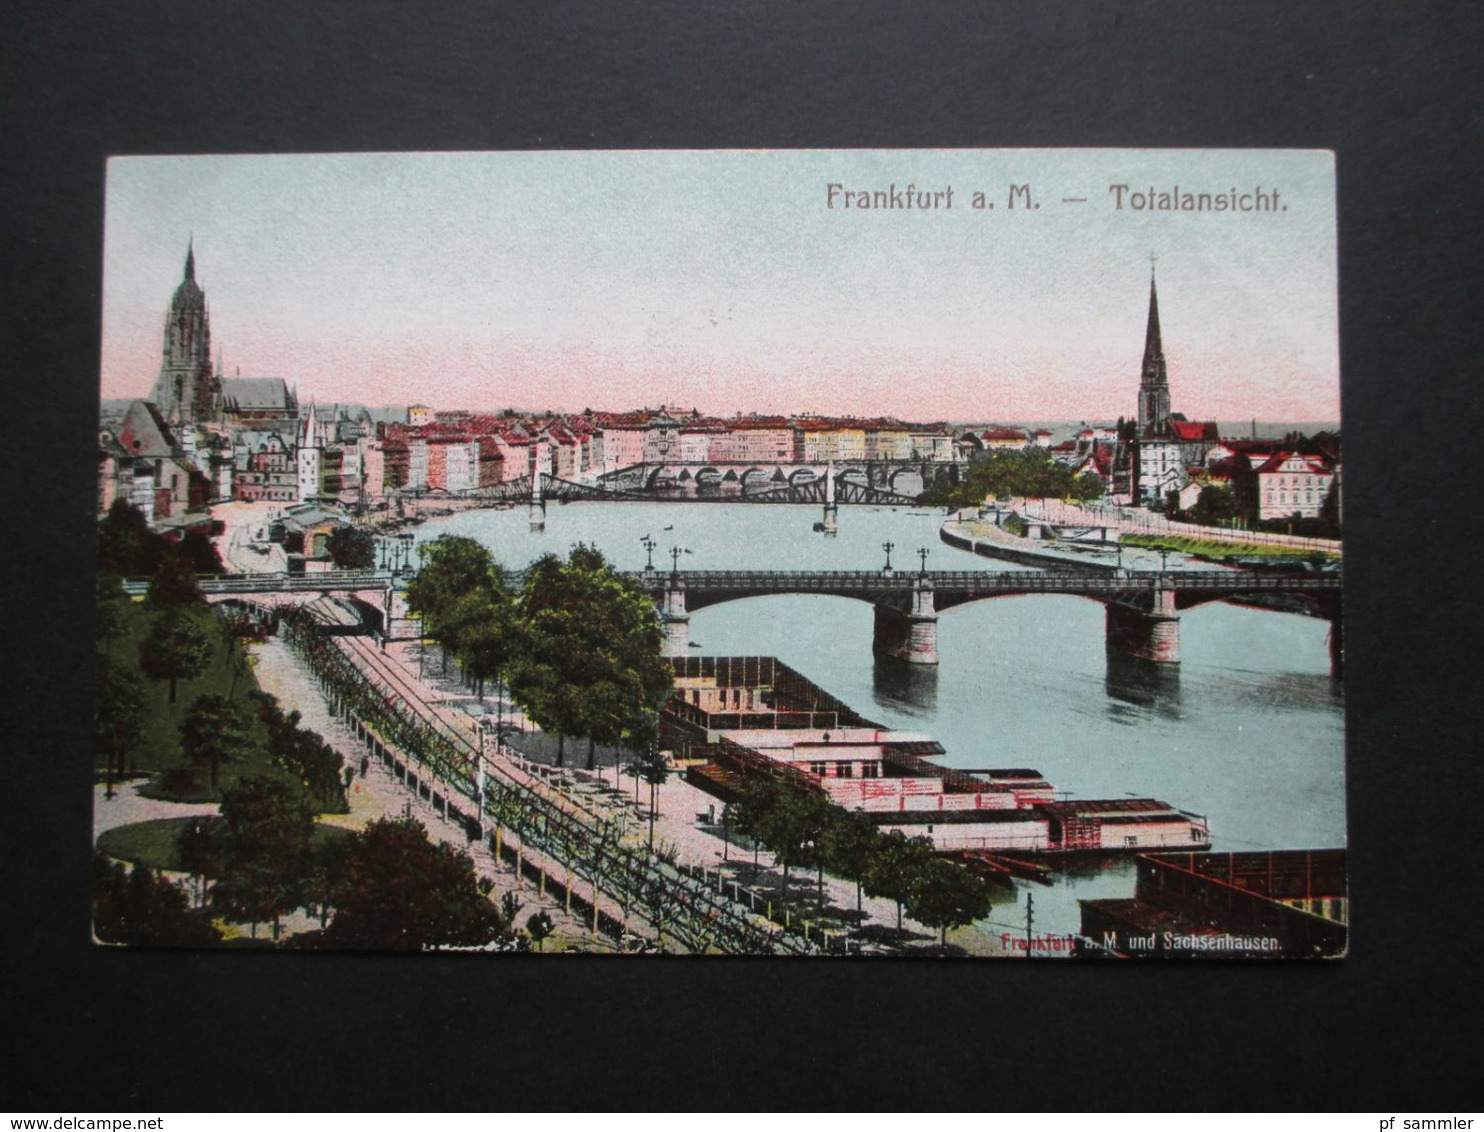 AK Deutsches Reich um 1910 Frankfurt am Main verschiedene Ansichten! 13 Ansichtskarten ungebraucht!